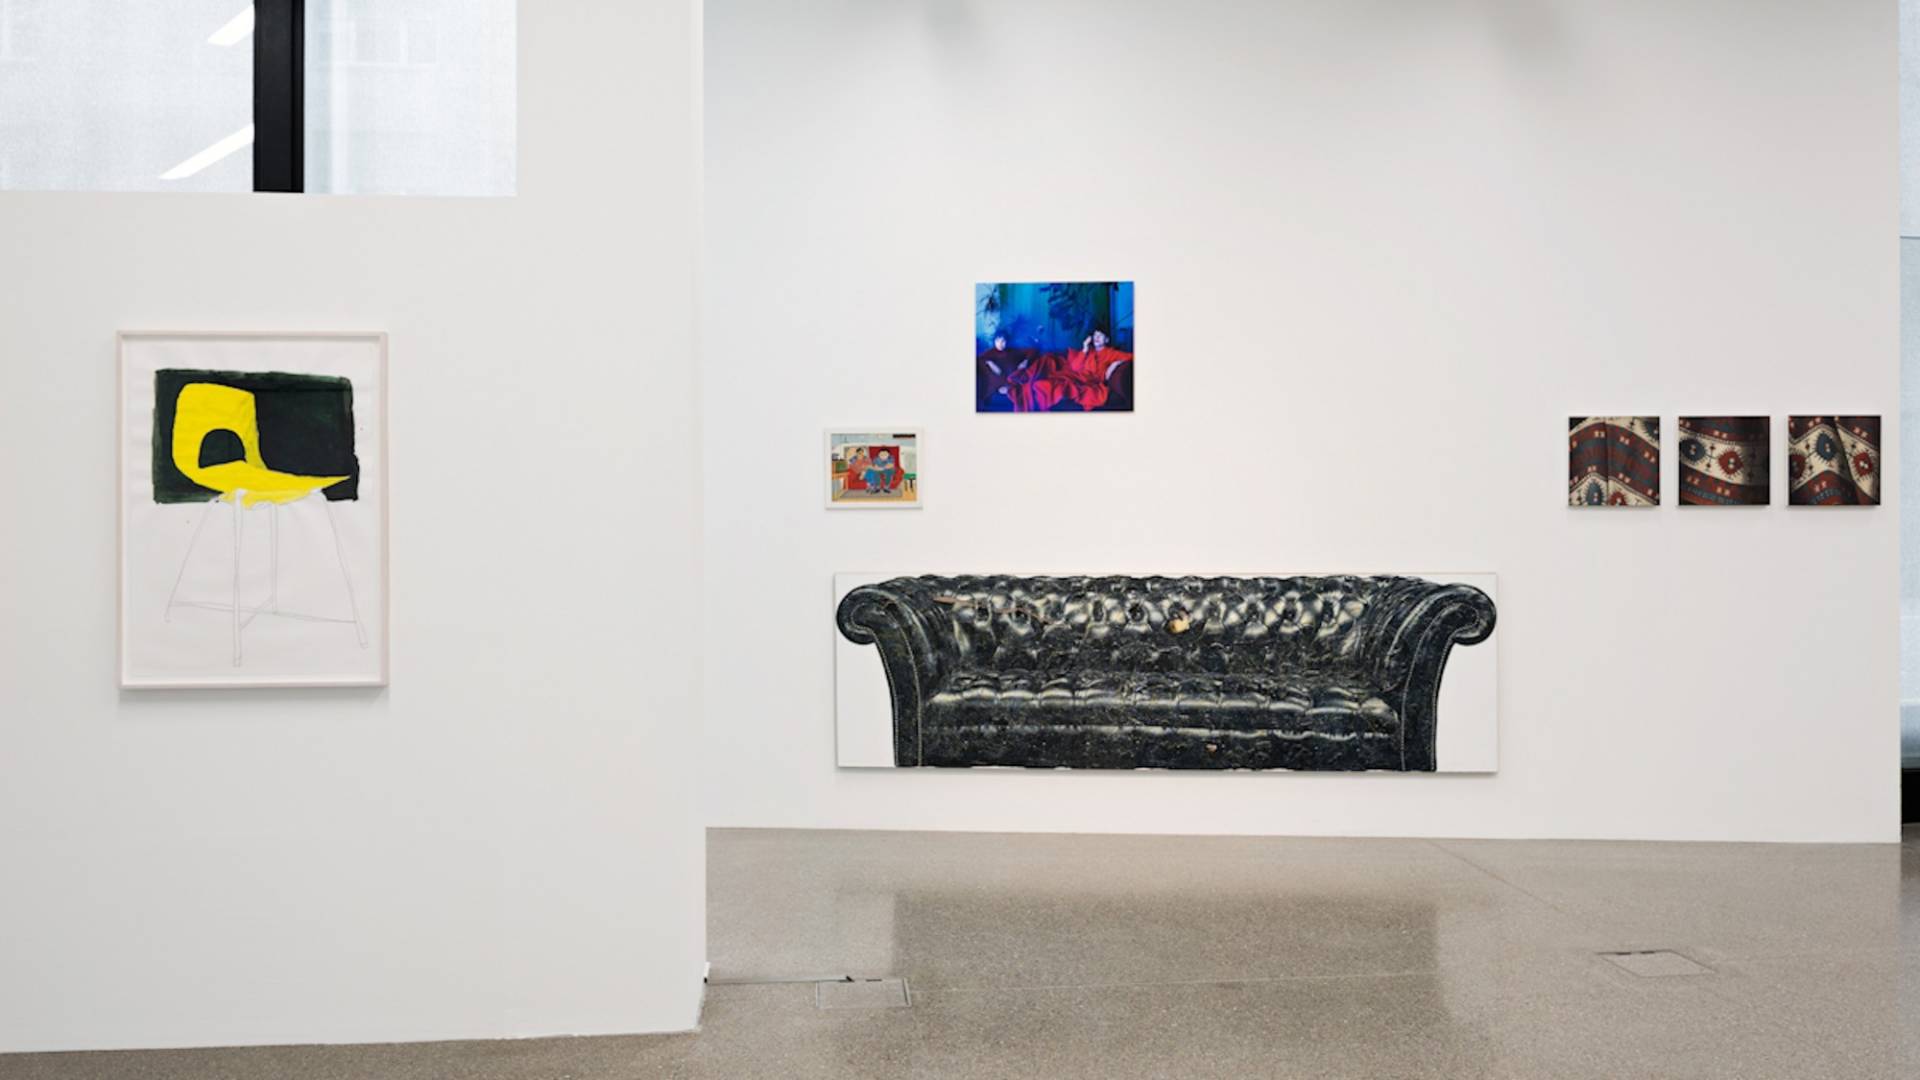 Blick in den Ausstellungsraum mit diversen Werken, die das Thema Sitzgelegenheiten darstellen: ein gelber Stuhl, ein schwarzes Sofa, sitzende Männer beim Radiohören, zwei Frauen auf einem Sofa und eine Darstellung Sigmund Freuds Sofa-Decke.